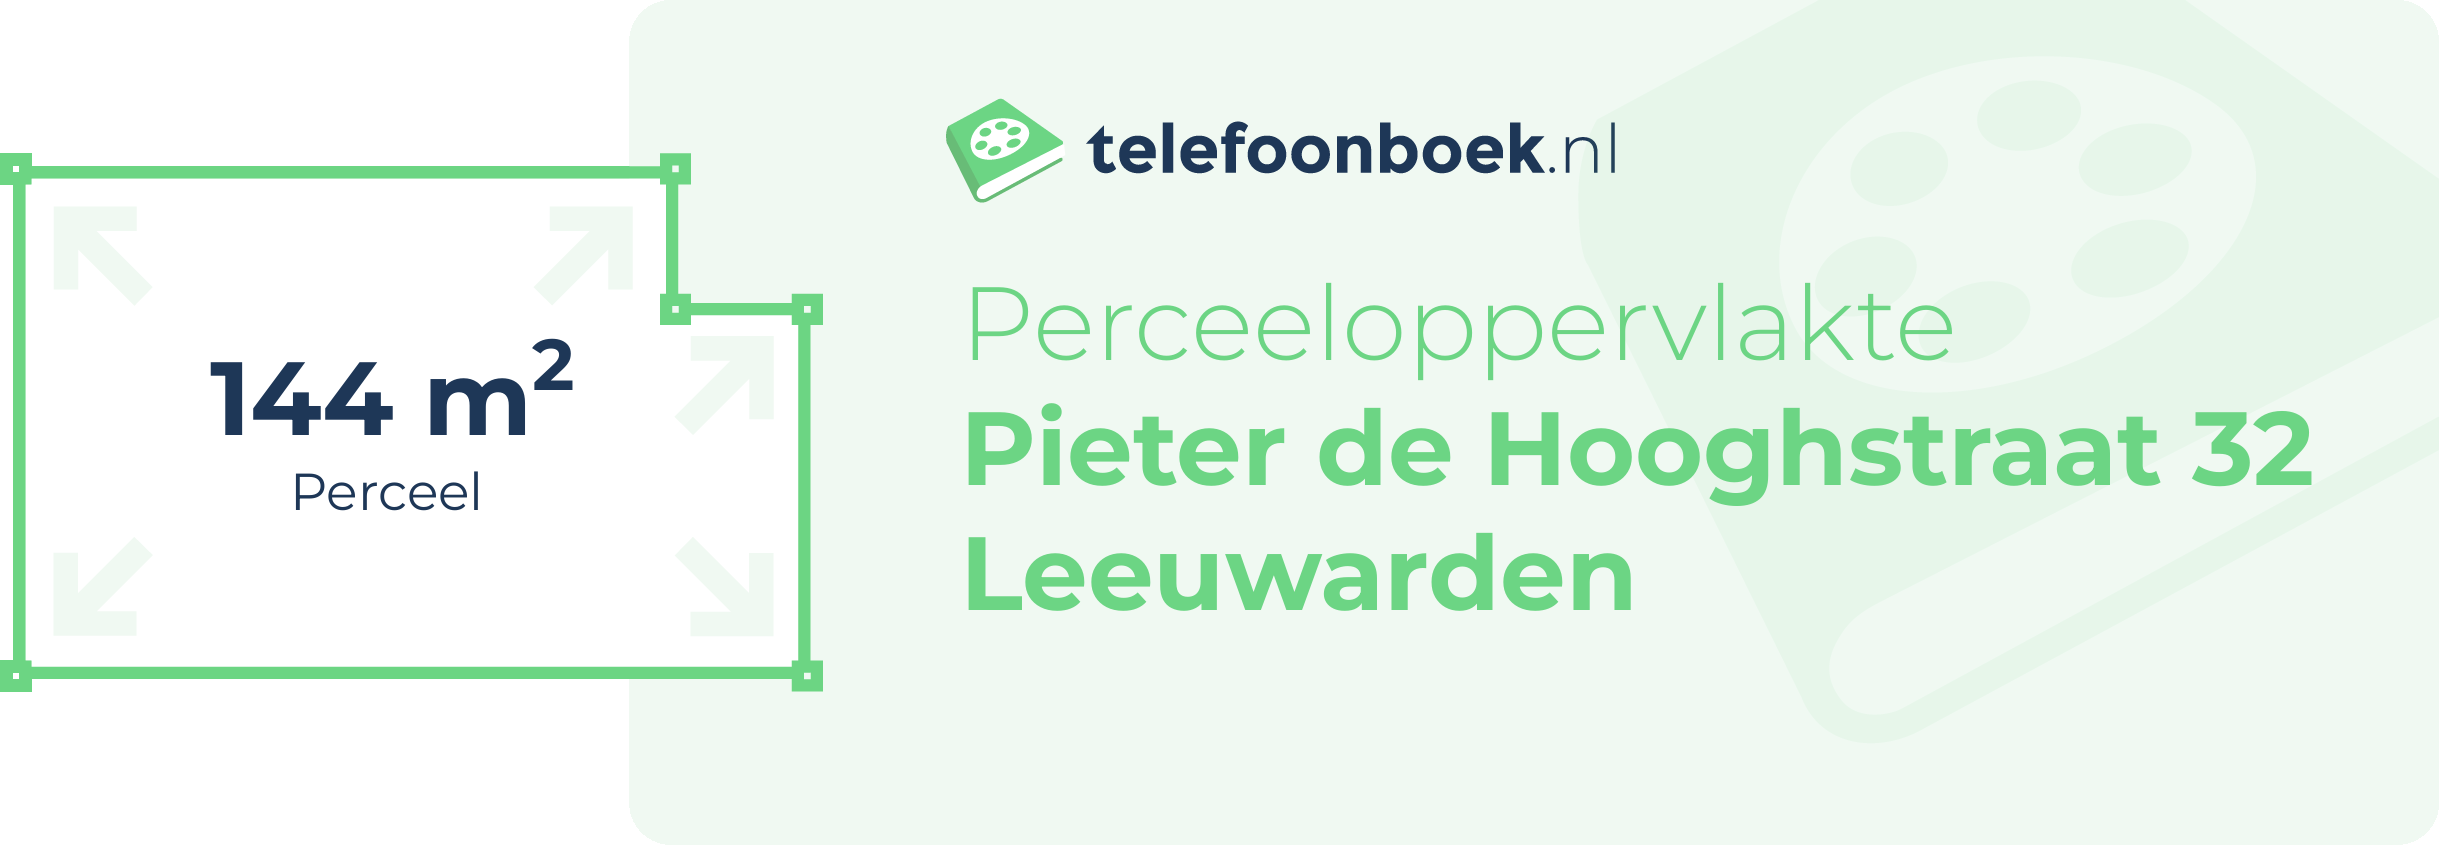 Perceeloppervlakte Pieter De Hooghstraat 32 Leeuwarden